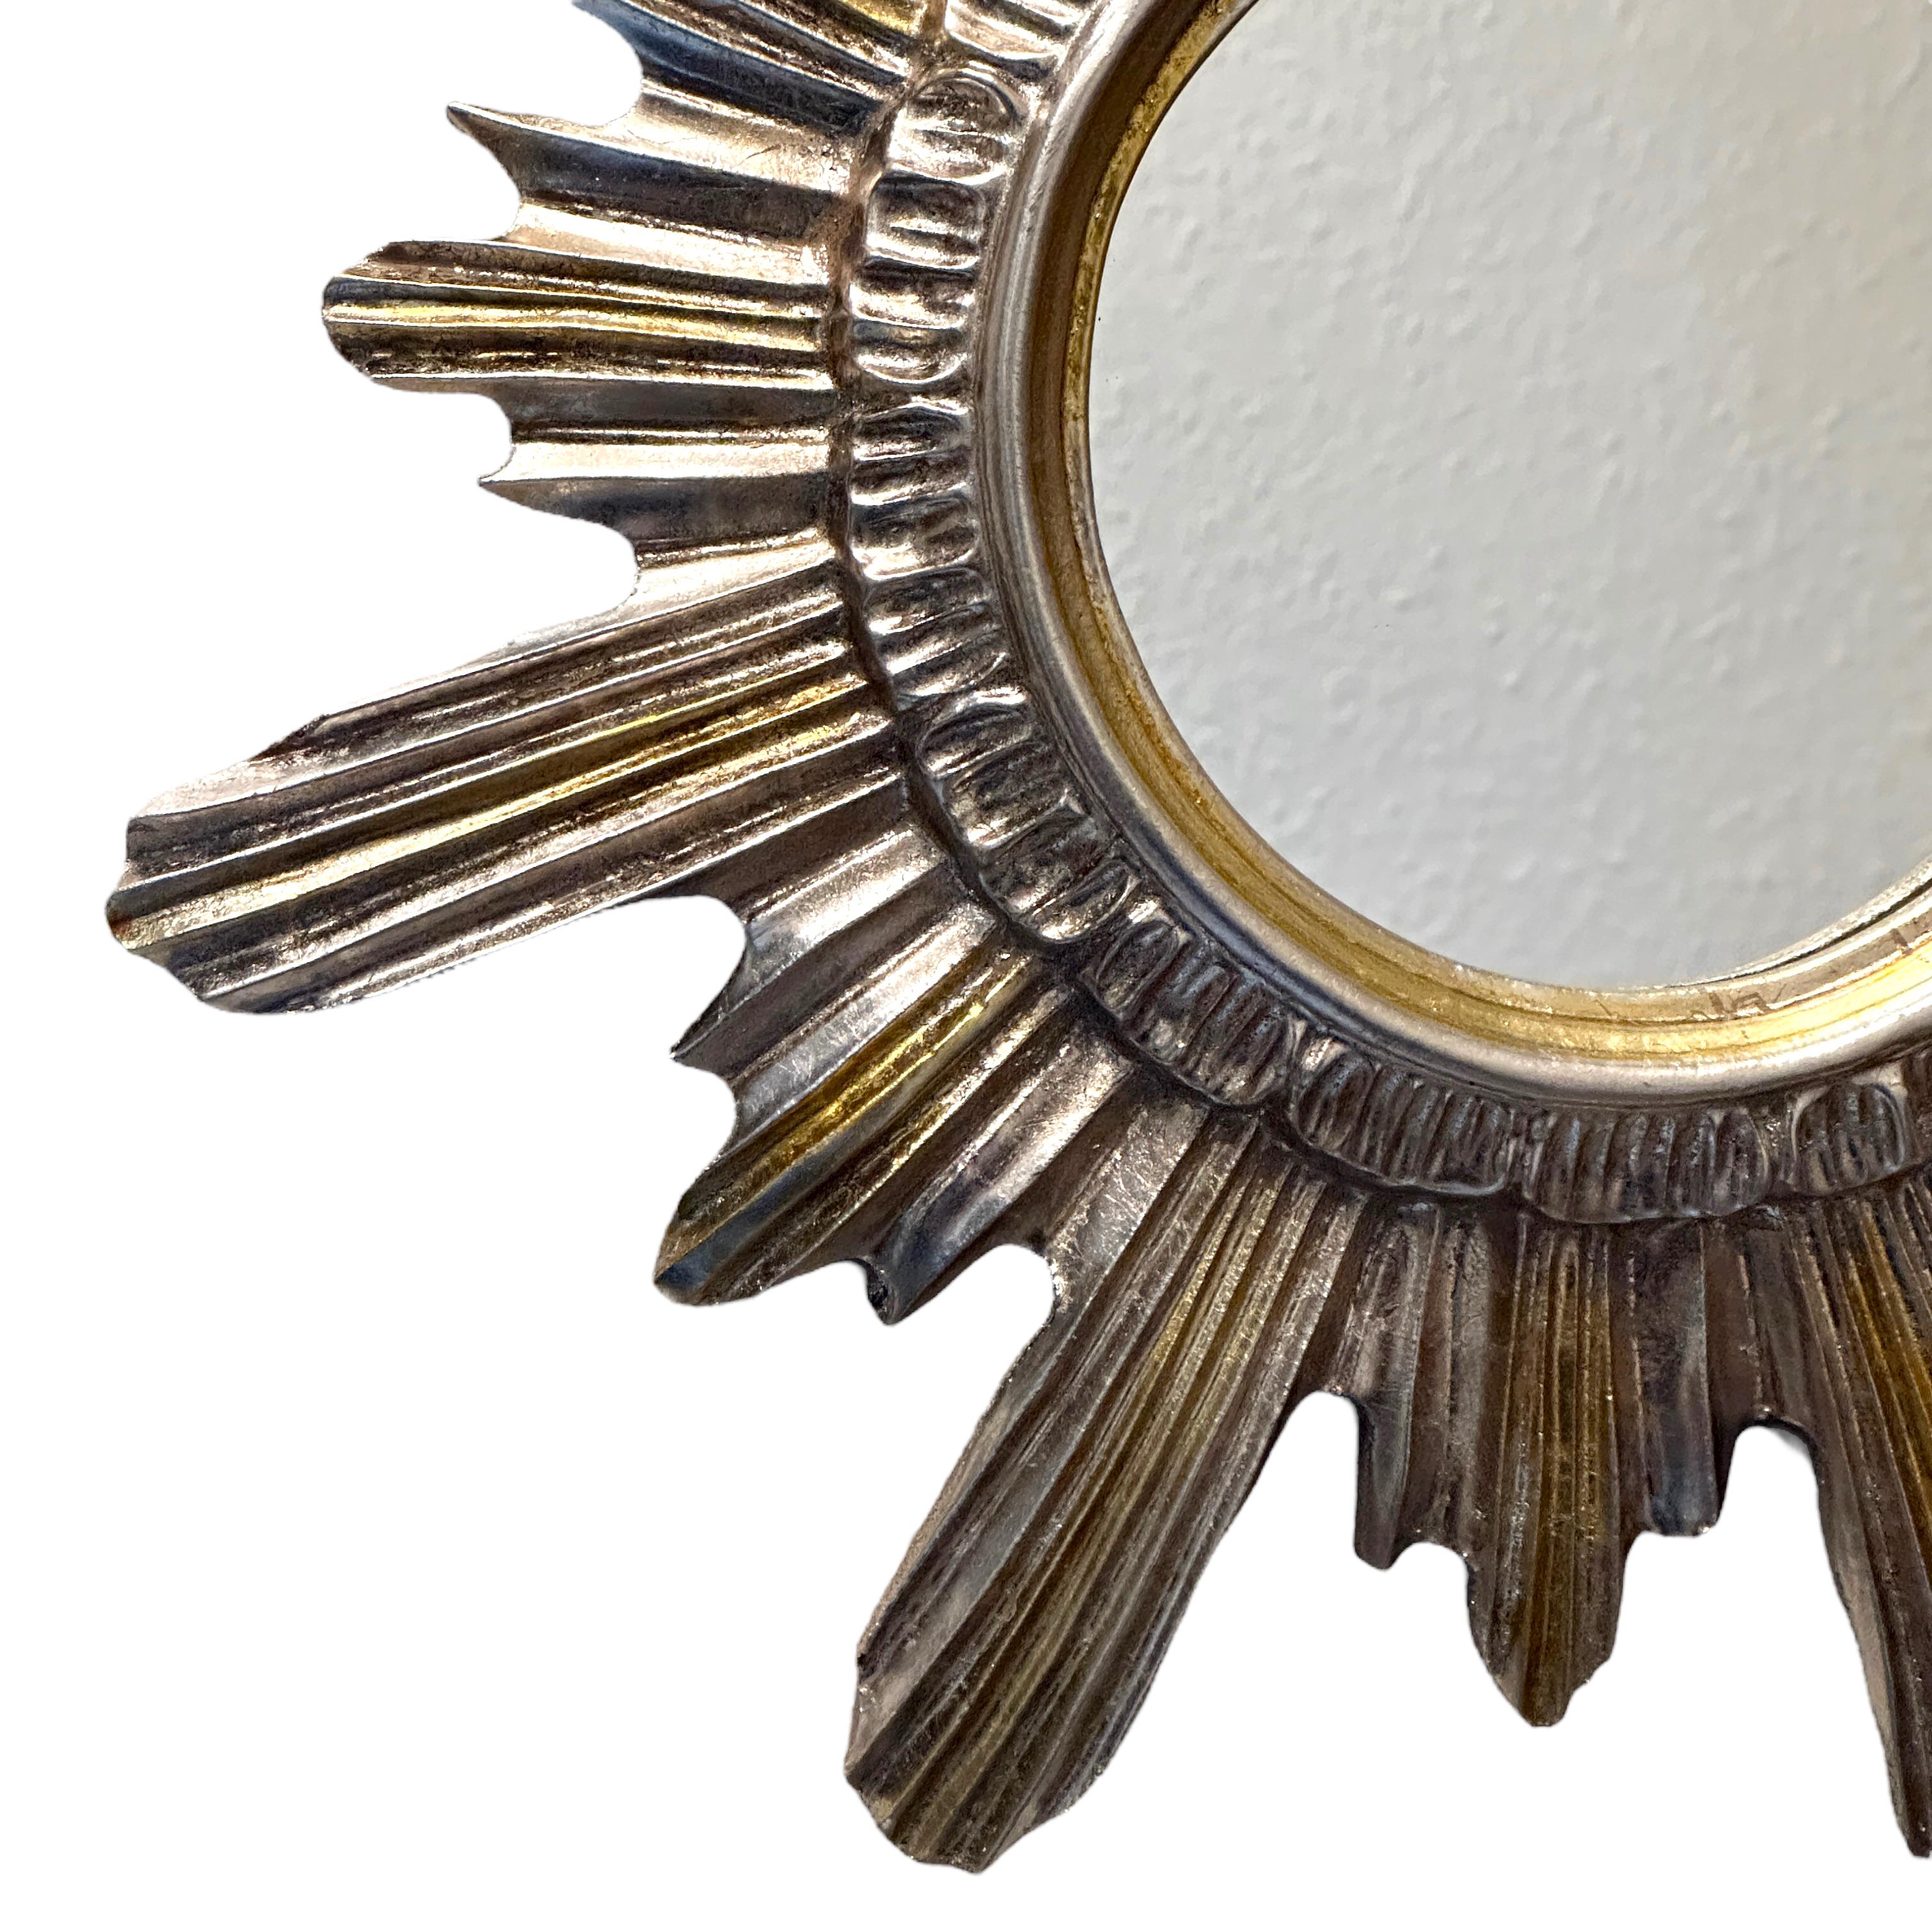 Un magnifique miroir en étoile. Fabriqué en argent, en bois doré et en stuc. Aucun éclat, aucune fissure, aucune réparation. Il mesure environ 16,63 pouces de diamètre, le miroir lui-même mesurant environ 5,63 pouces de diamètre. Il se tient à